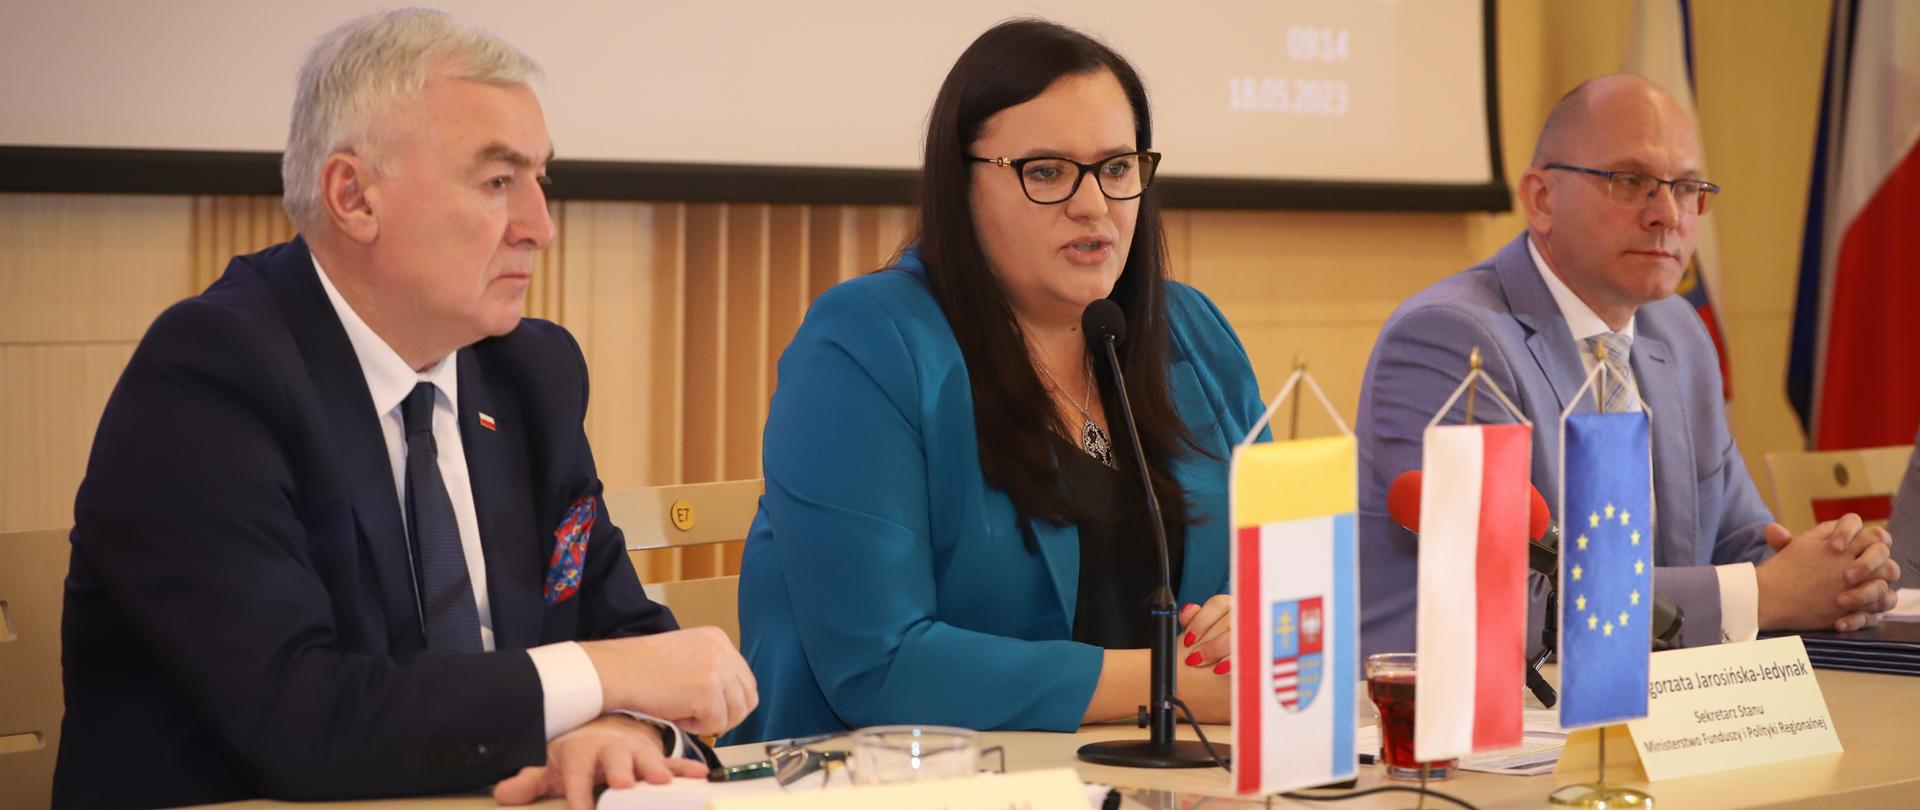 Trzy osoby siedzą przy stole. W środku siedzi wiceminister Małgorzata Jarosińska-Jedynak.